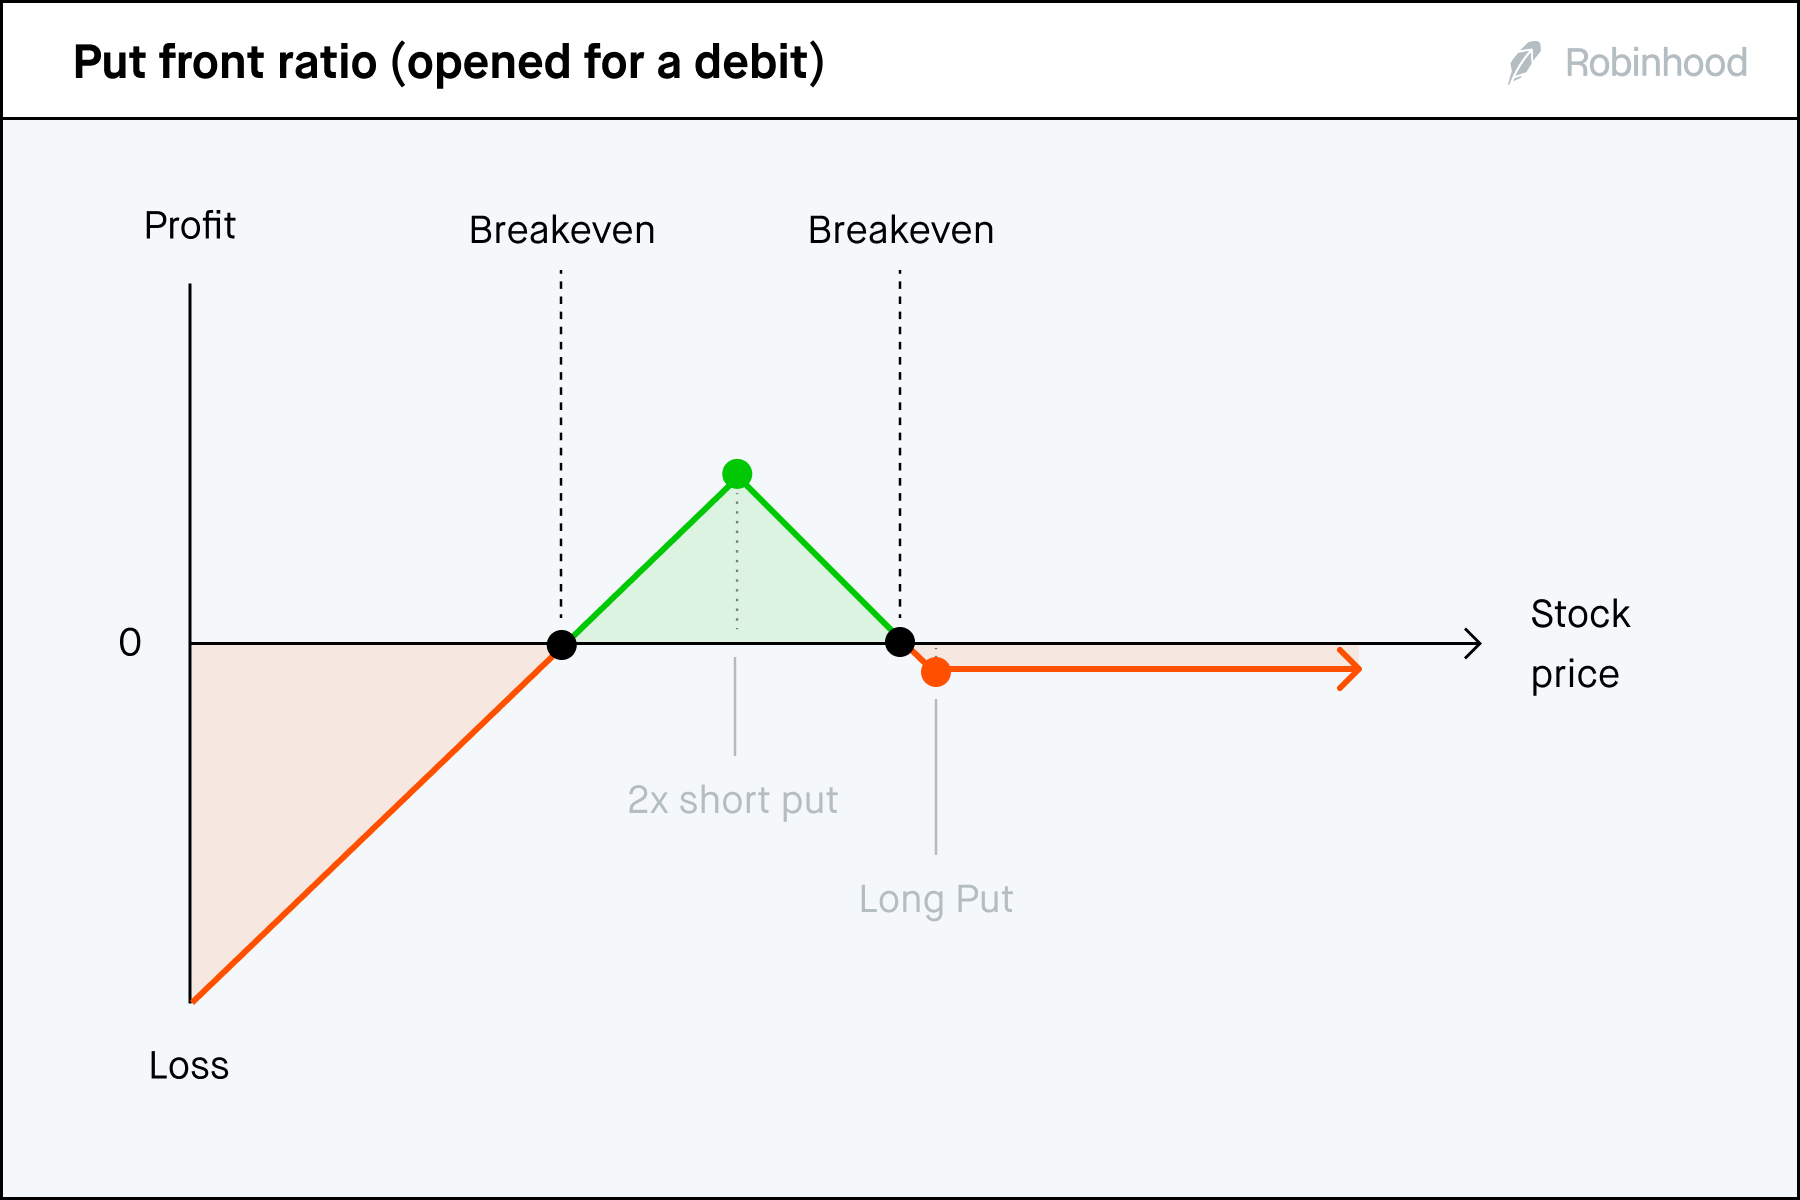 Put front ratio debit P/L chart 3x